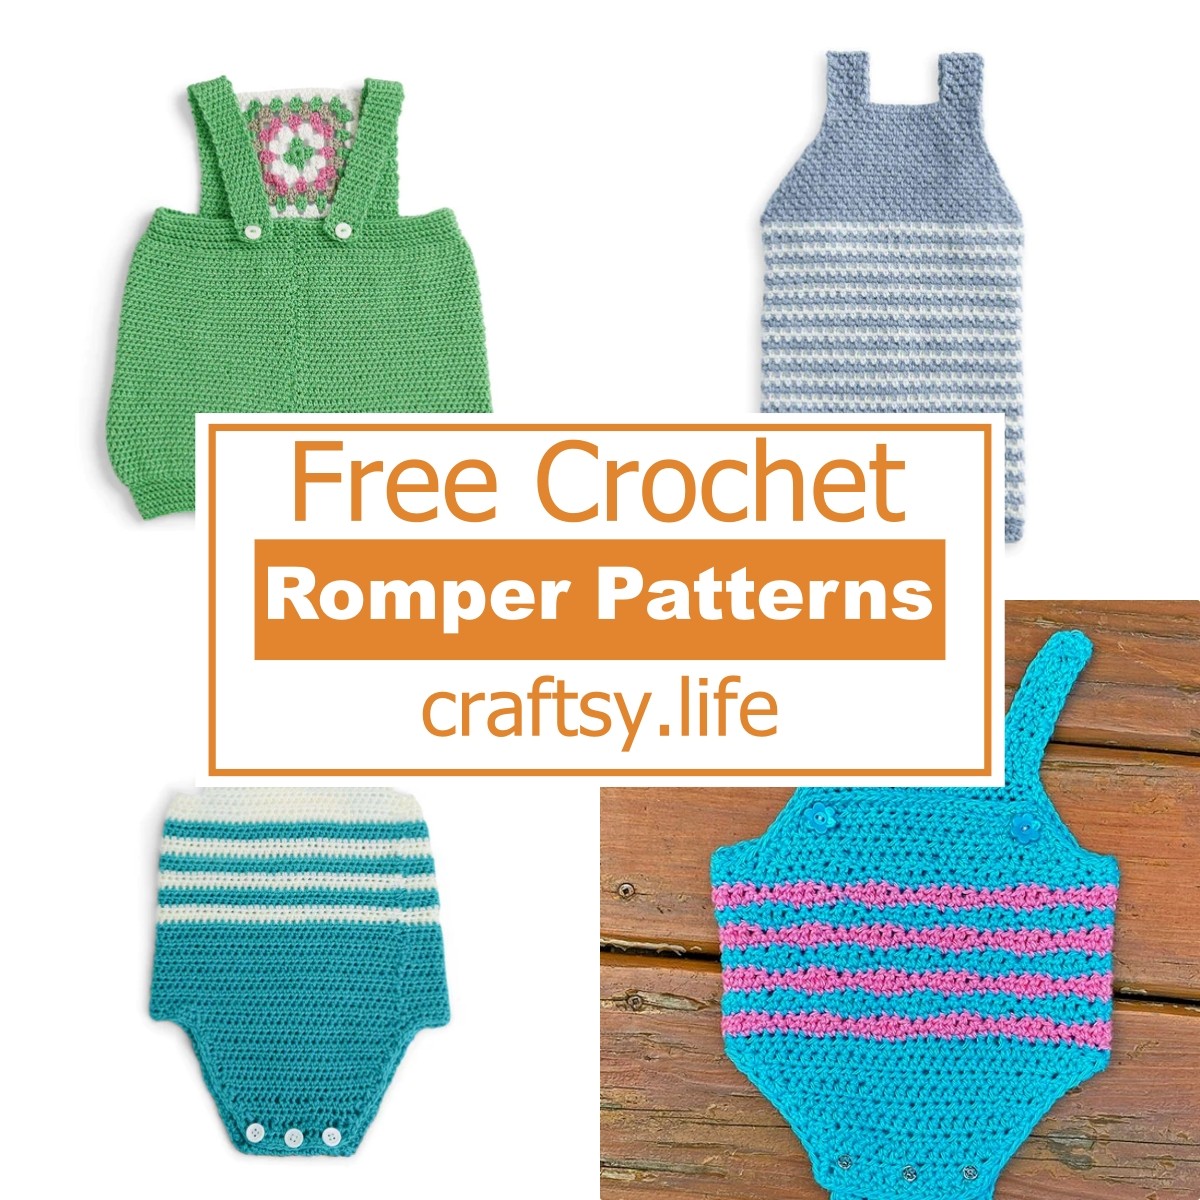 5 Free Crochet Romper Patterns